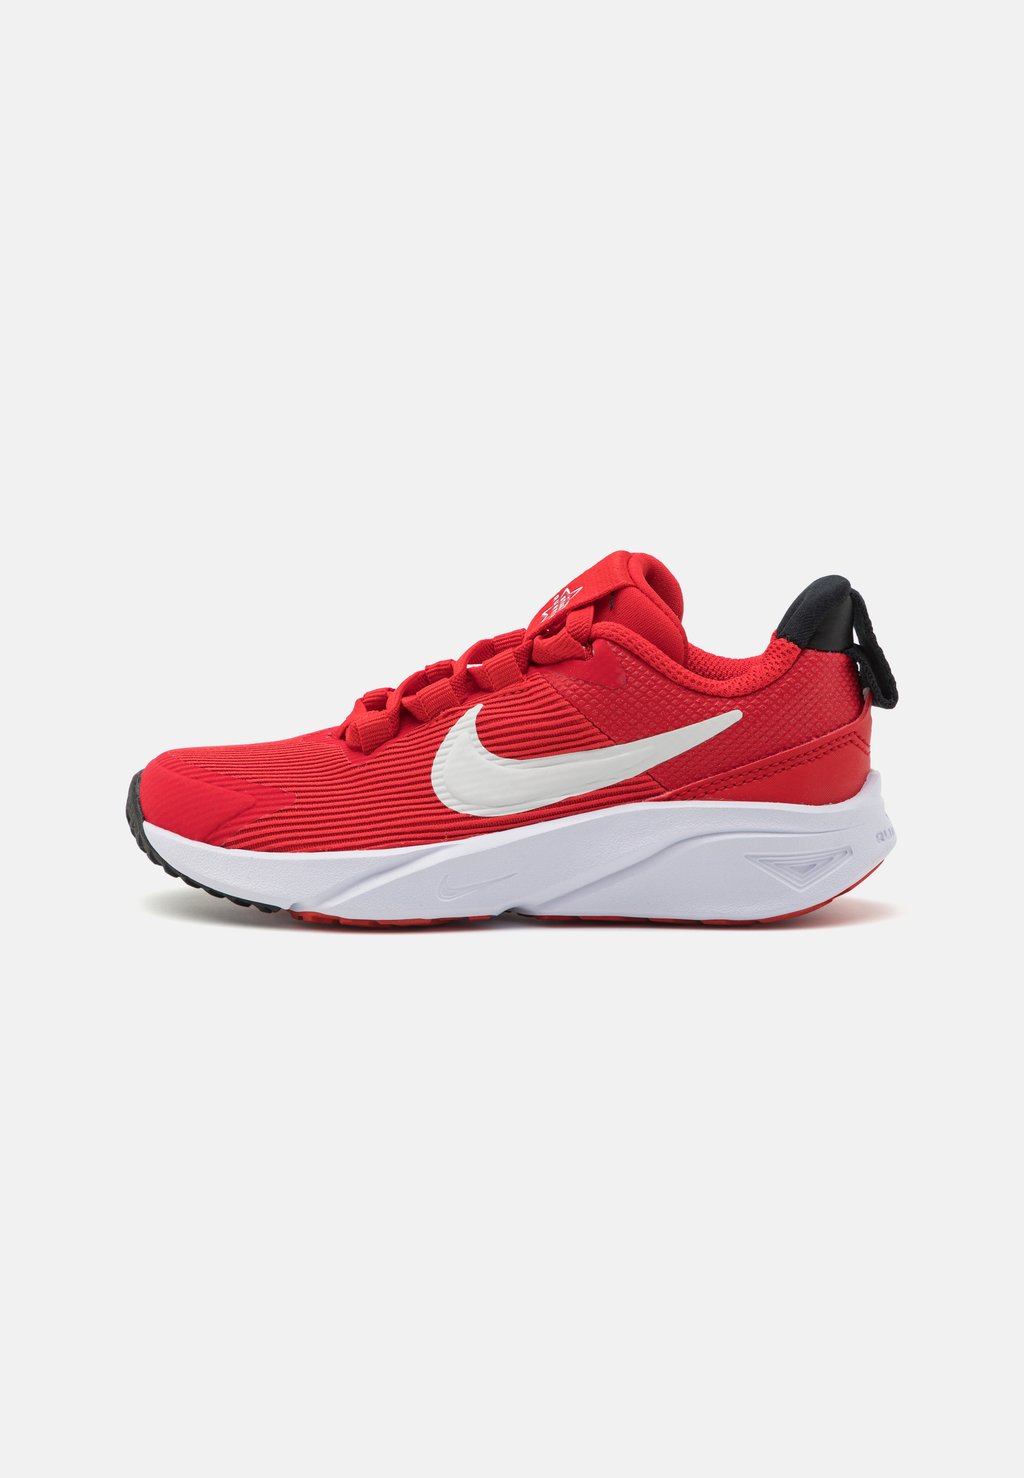 Нейтральные кроссовки Star Runner 4 Unisex Nike, цвет university red/summit white/black/white цена и фото